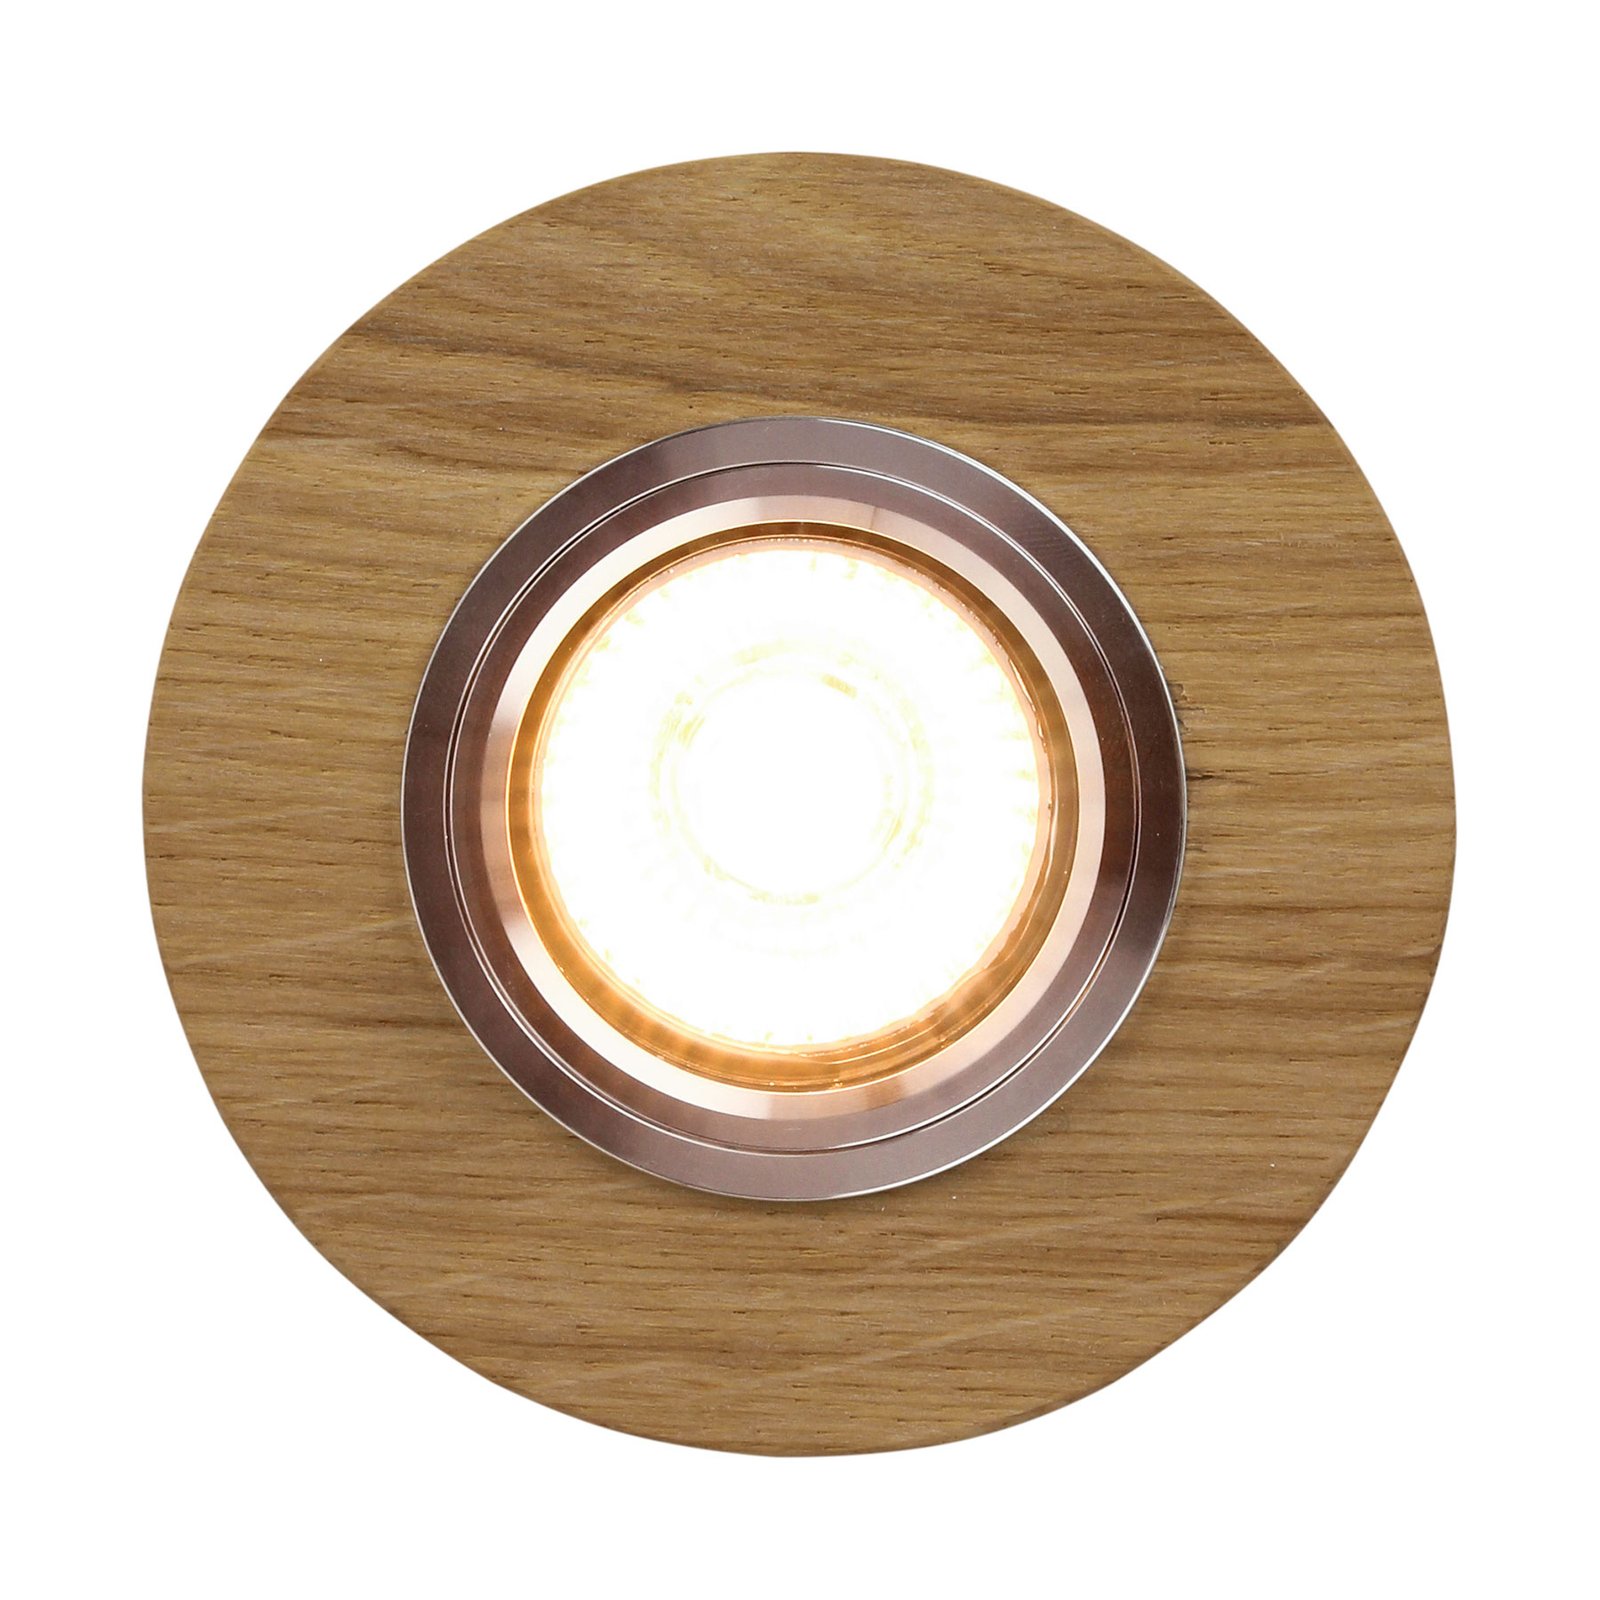 Sirion LED downlight, Ø 10 cm oiled oak